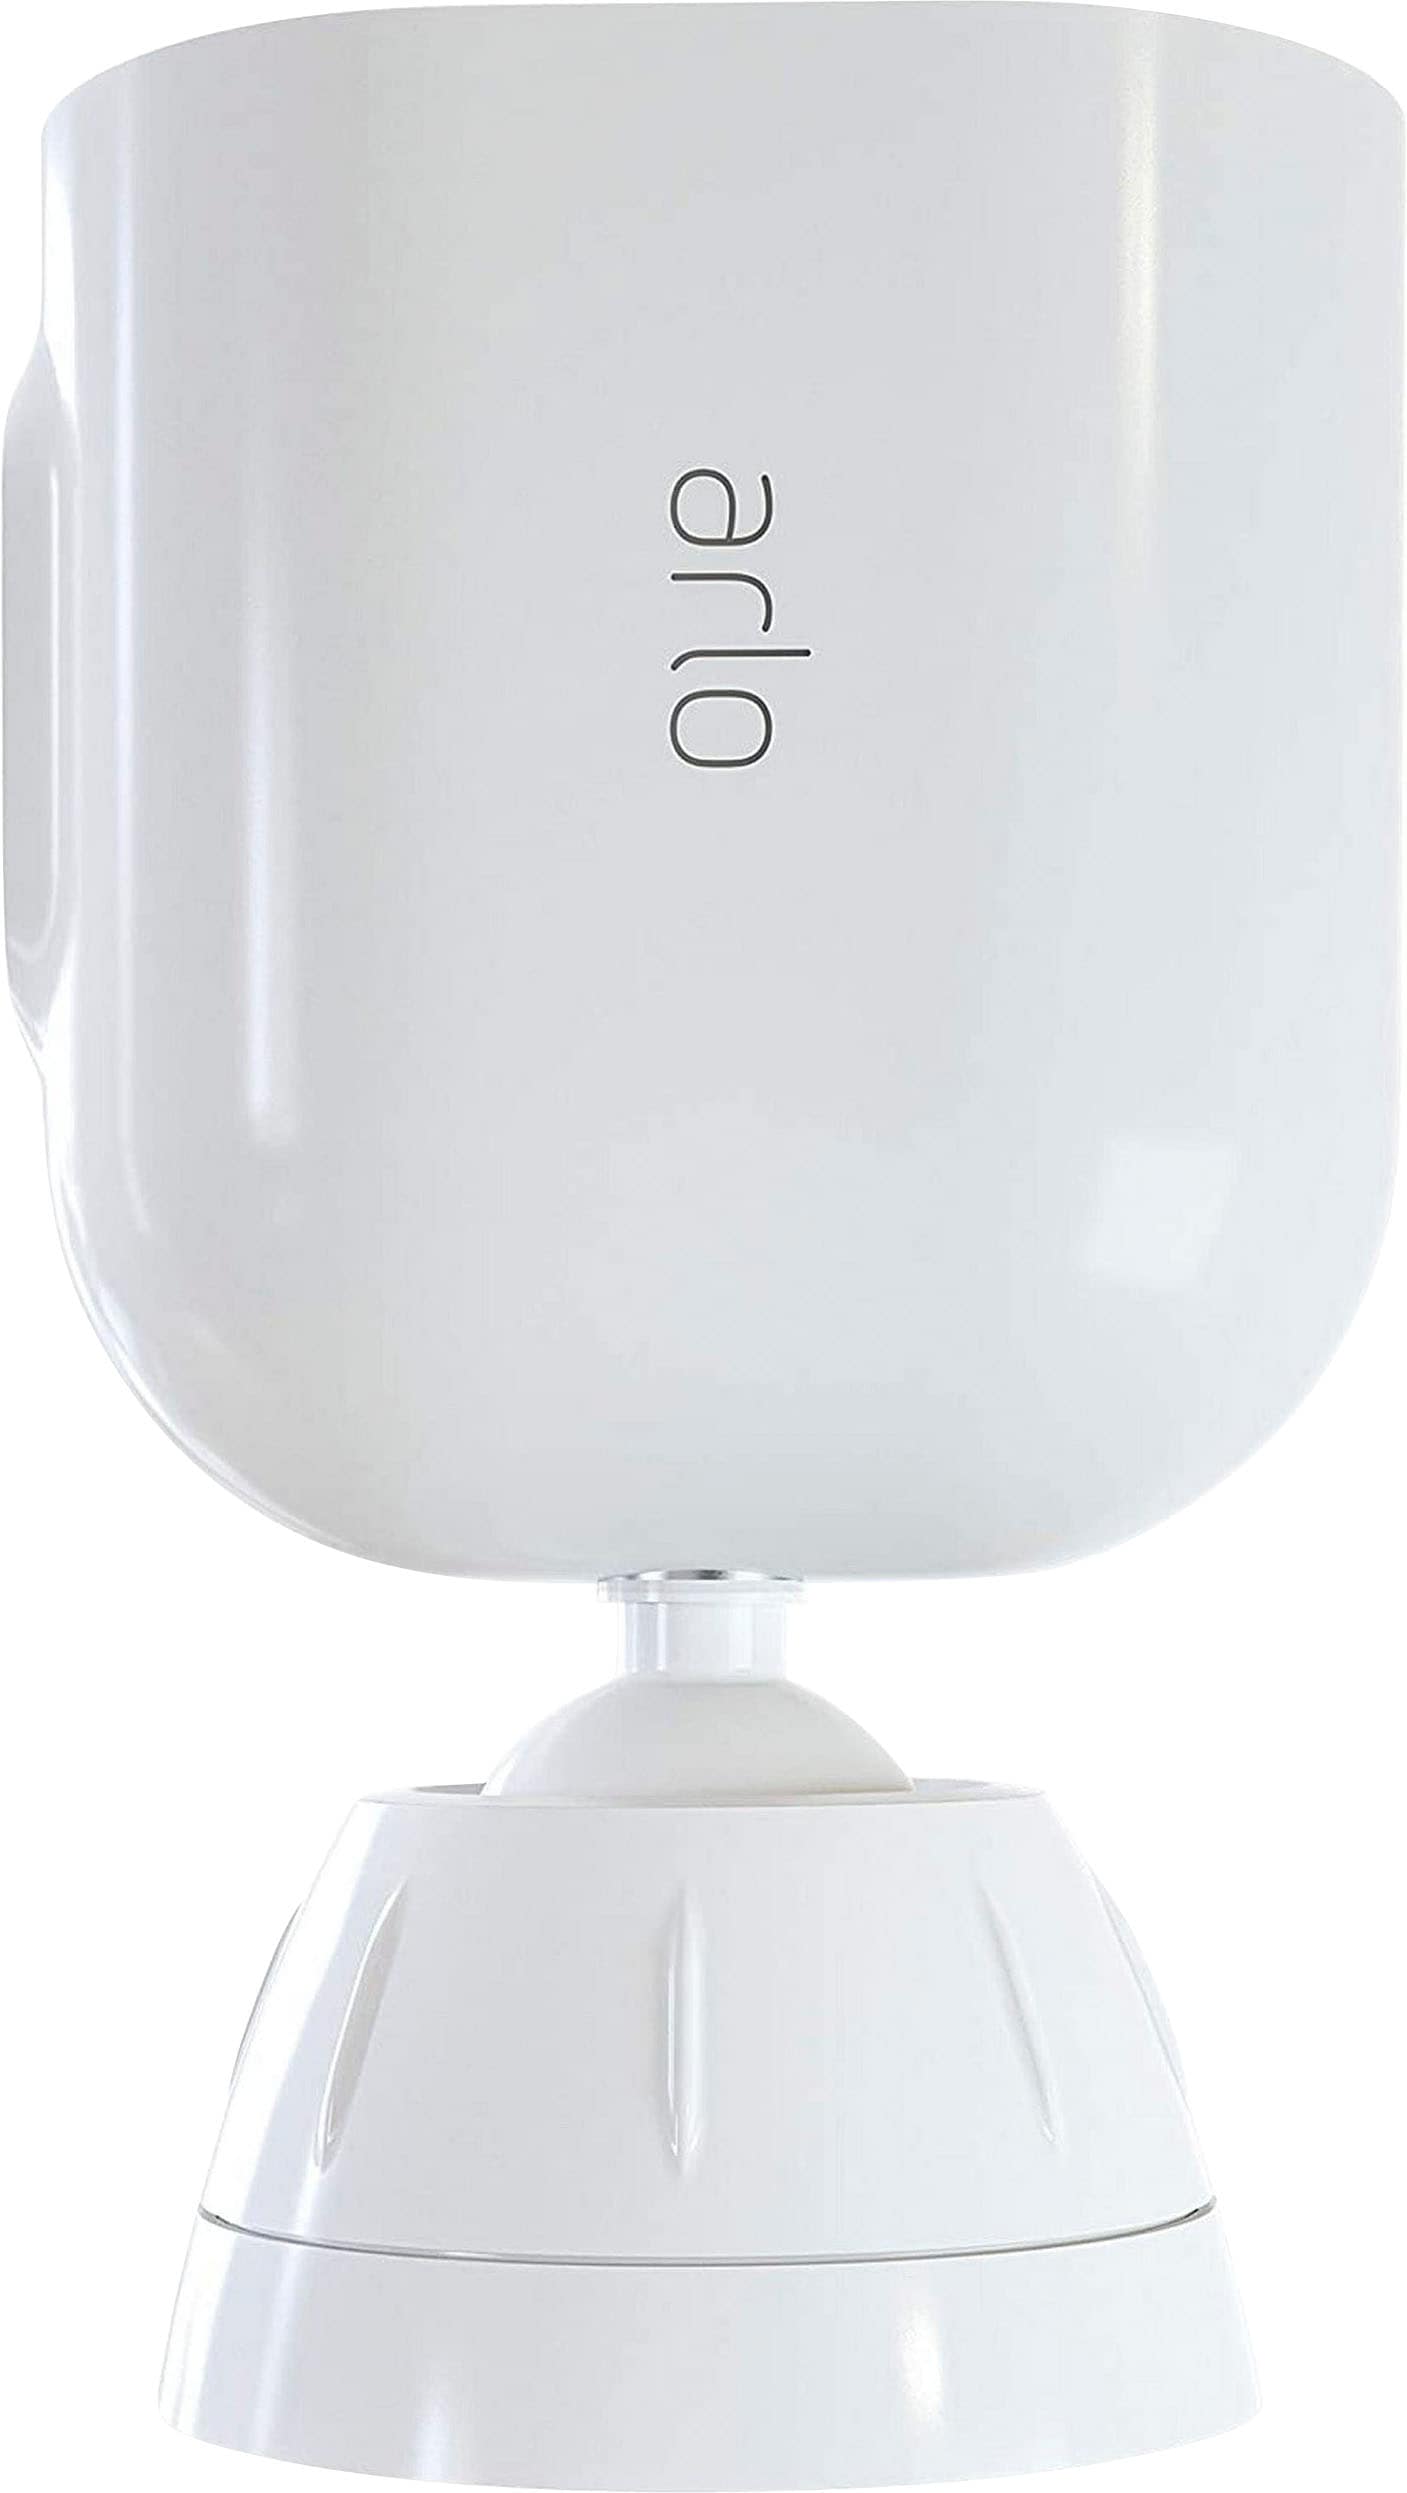 ARLO Kamerahalterung »Total Security Halterung geeignet für Ultra & Pro3 Überwachungskameras«